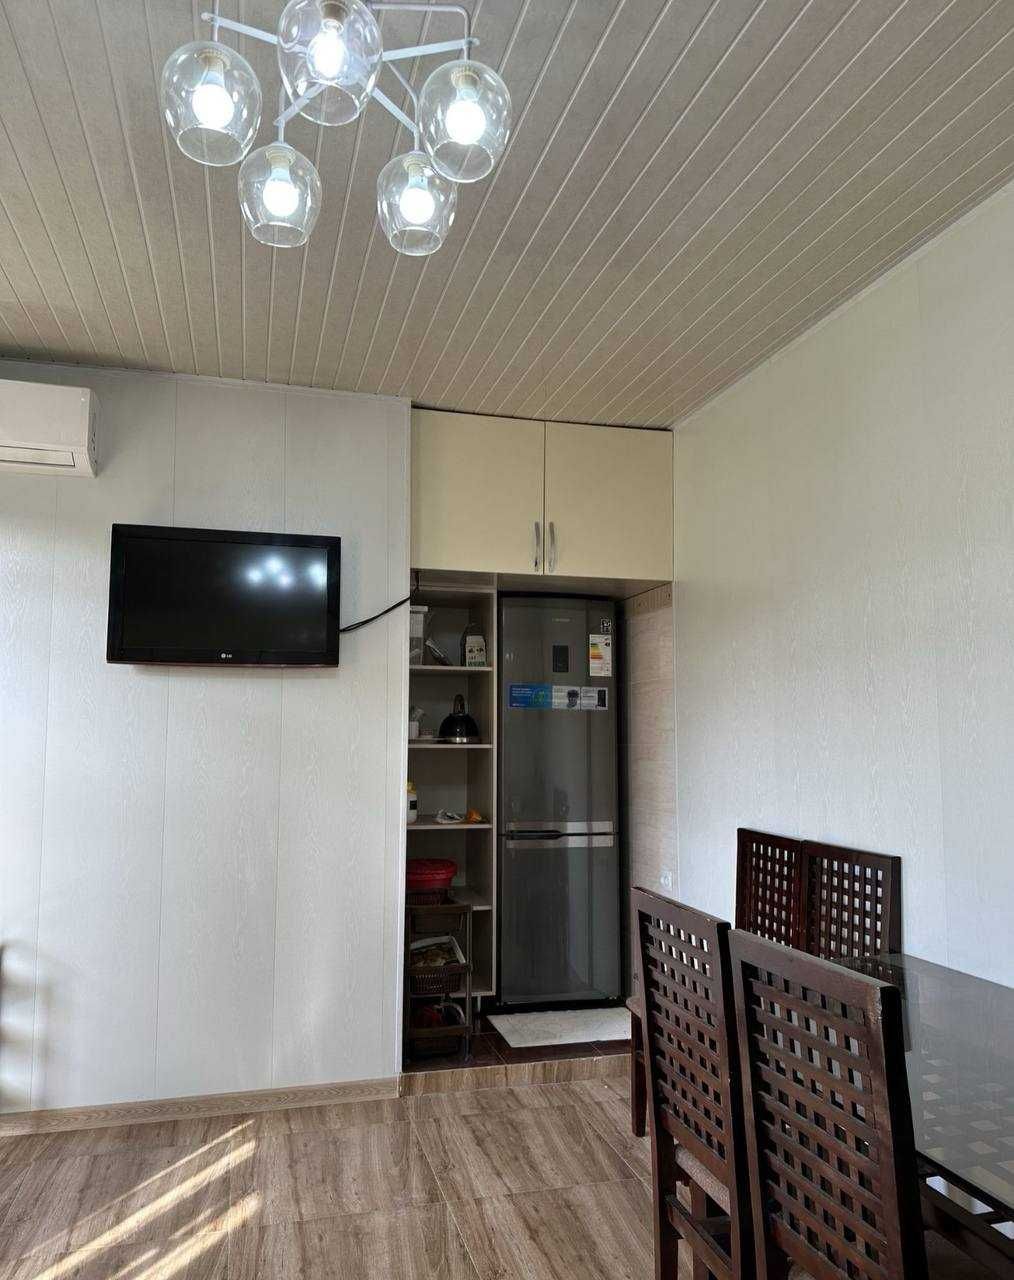 Продается дом 3 соток с мебелью и техникой 3сот(Зенит)в Юнусабадском р